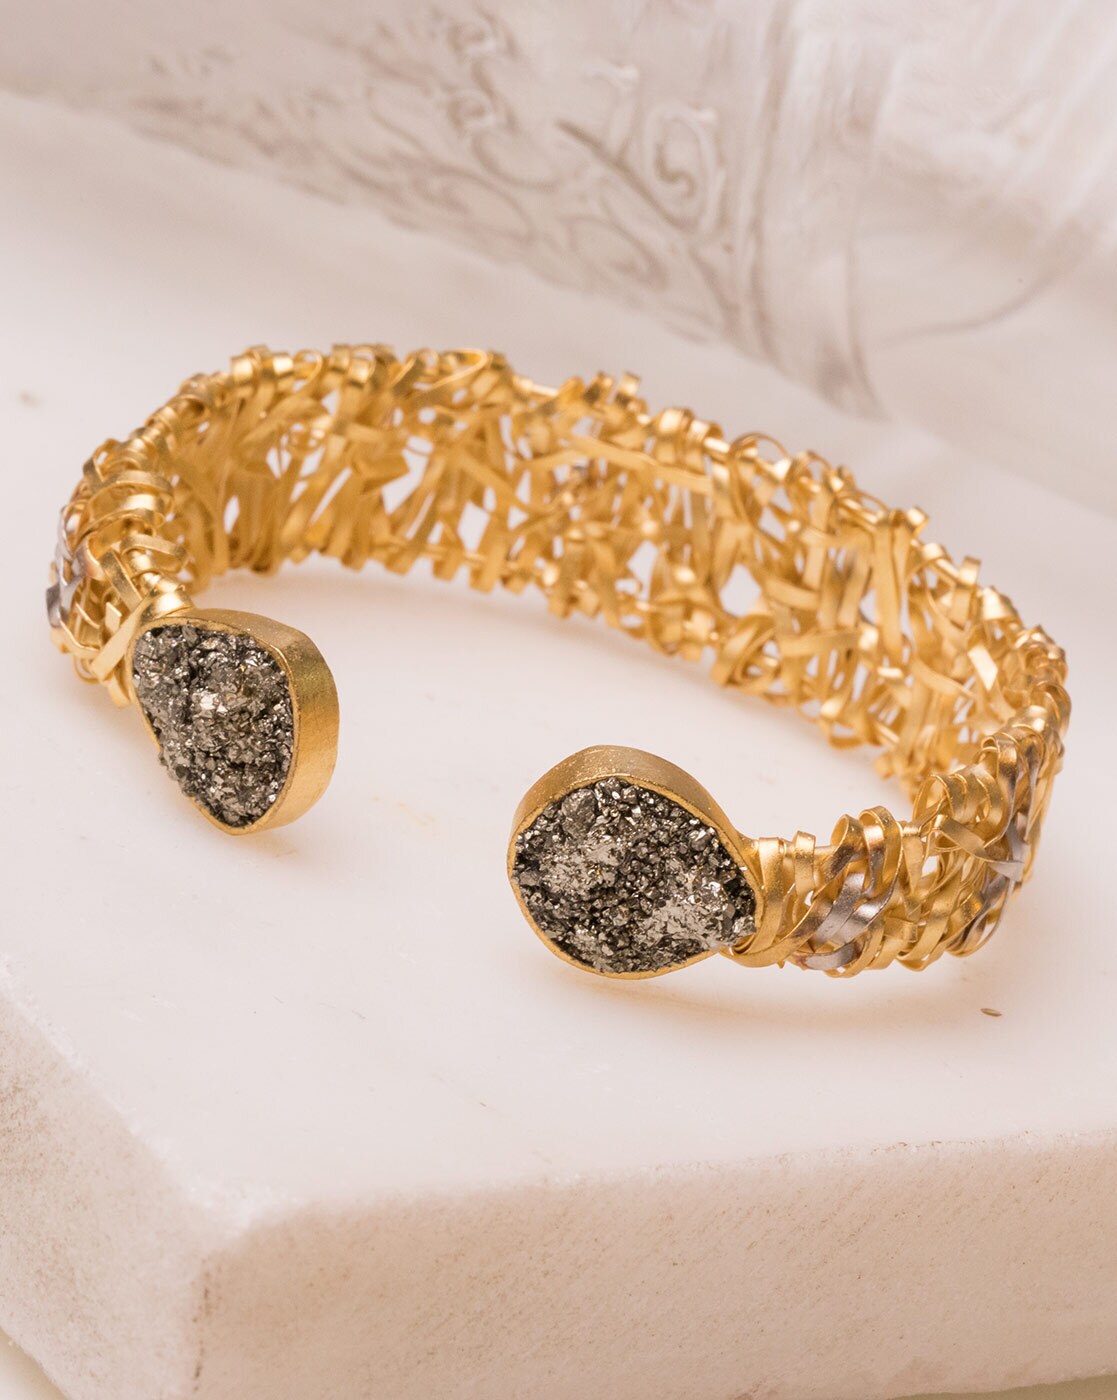 Placer Gold Design - *New* Natural Gold Nugget Bracelet